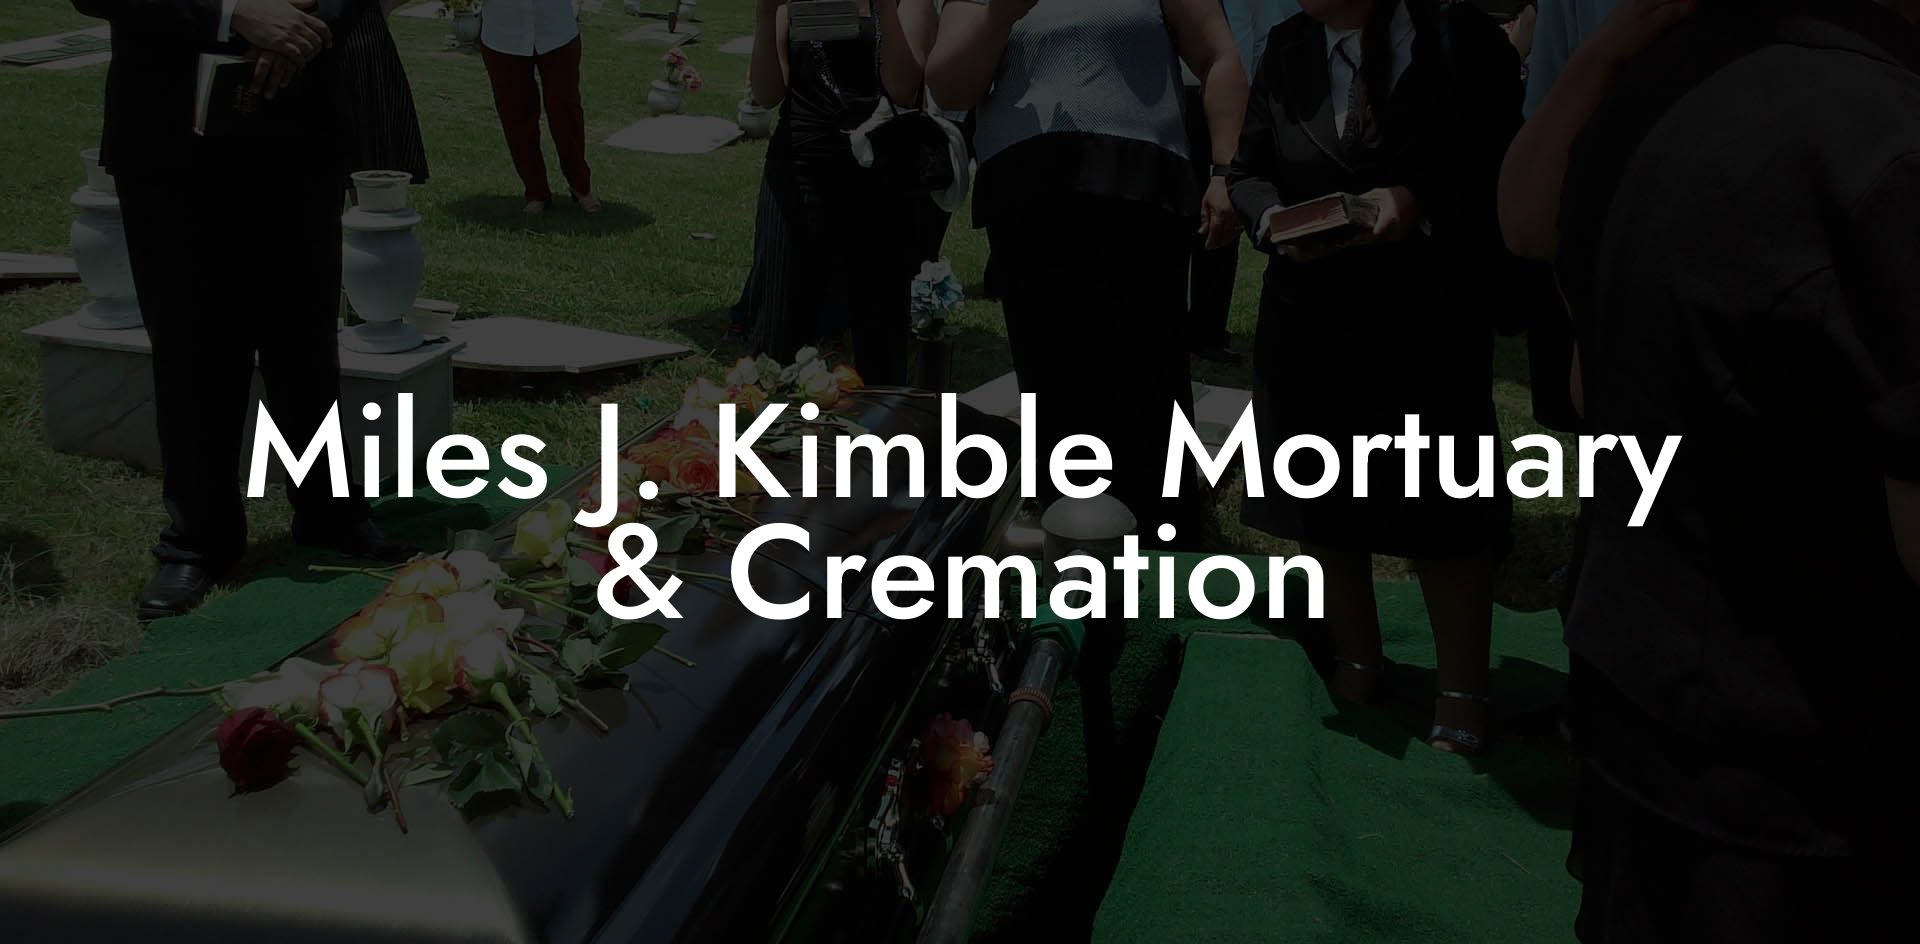 Miles J. Kimble Mortuary & Cremation